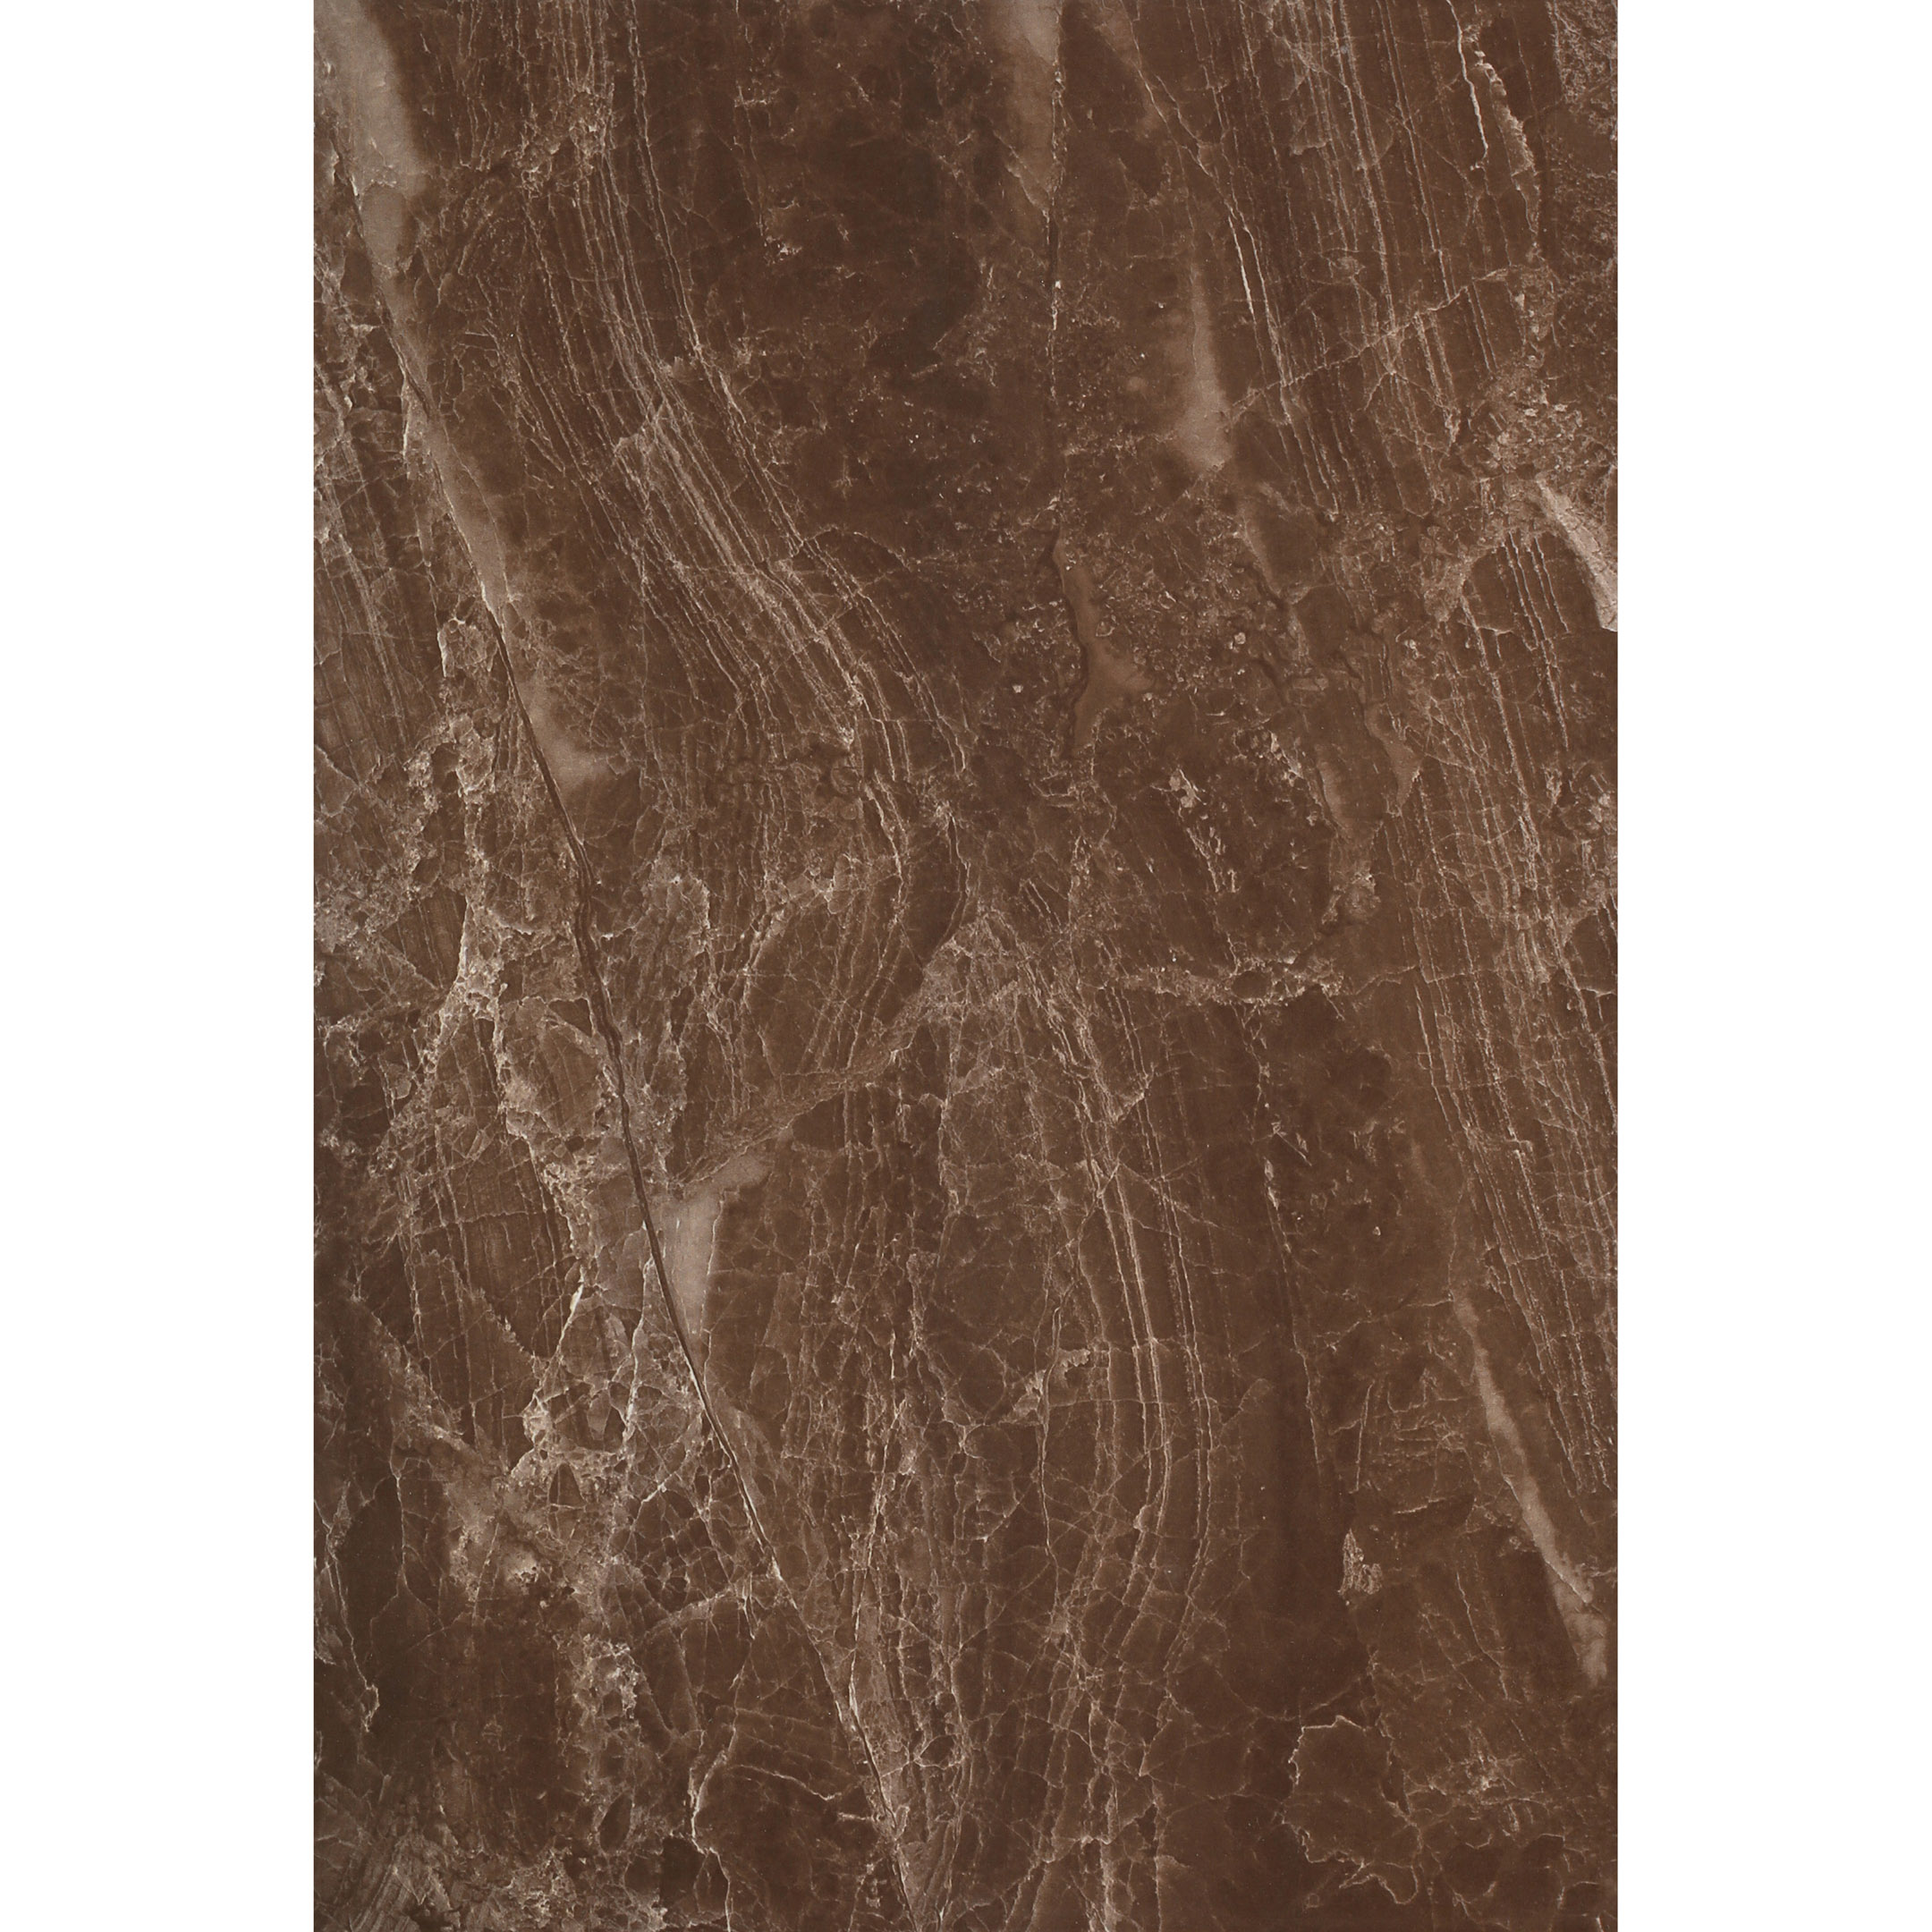 фото Плитка облицовочная евро-керамика дельма коричневый 400x270x8 мм (10 шт.=1,08 кв.м)